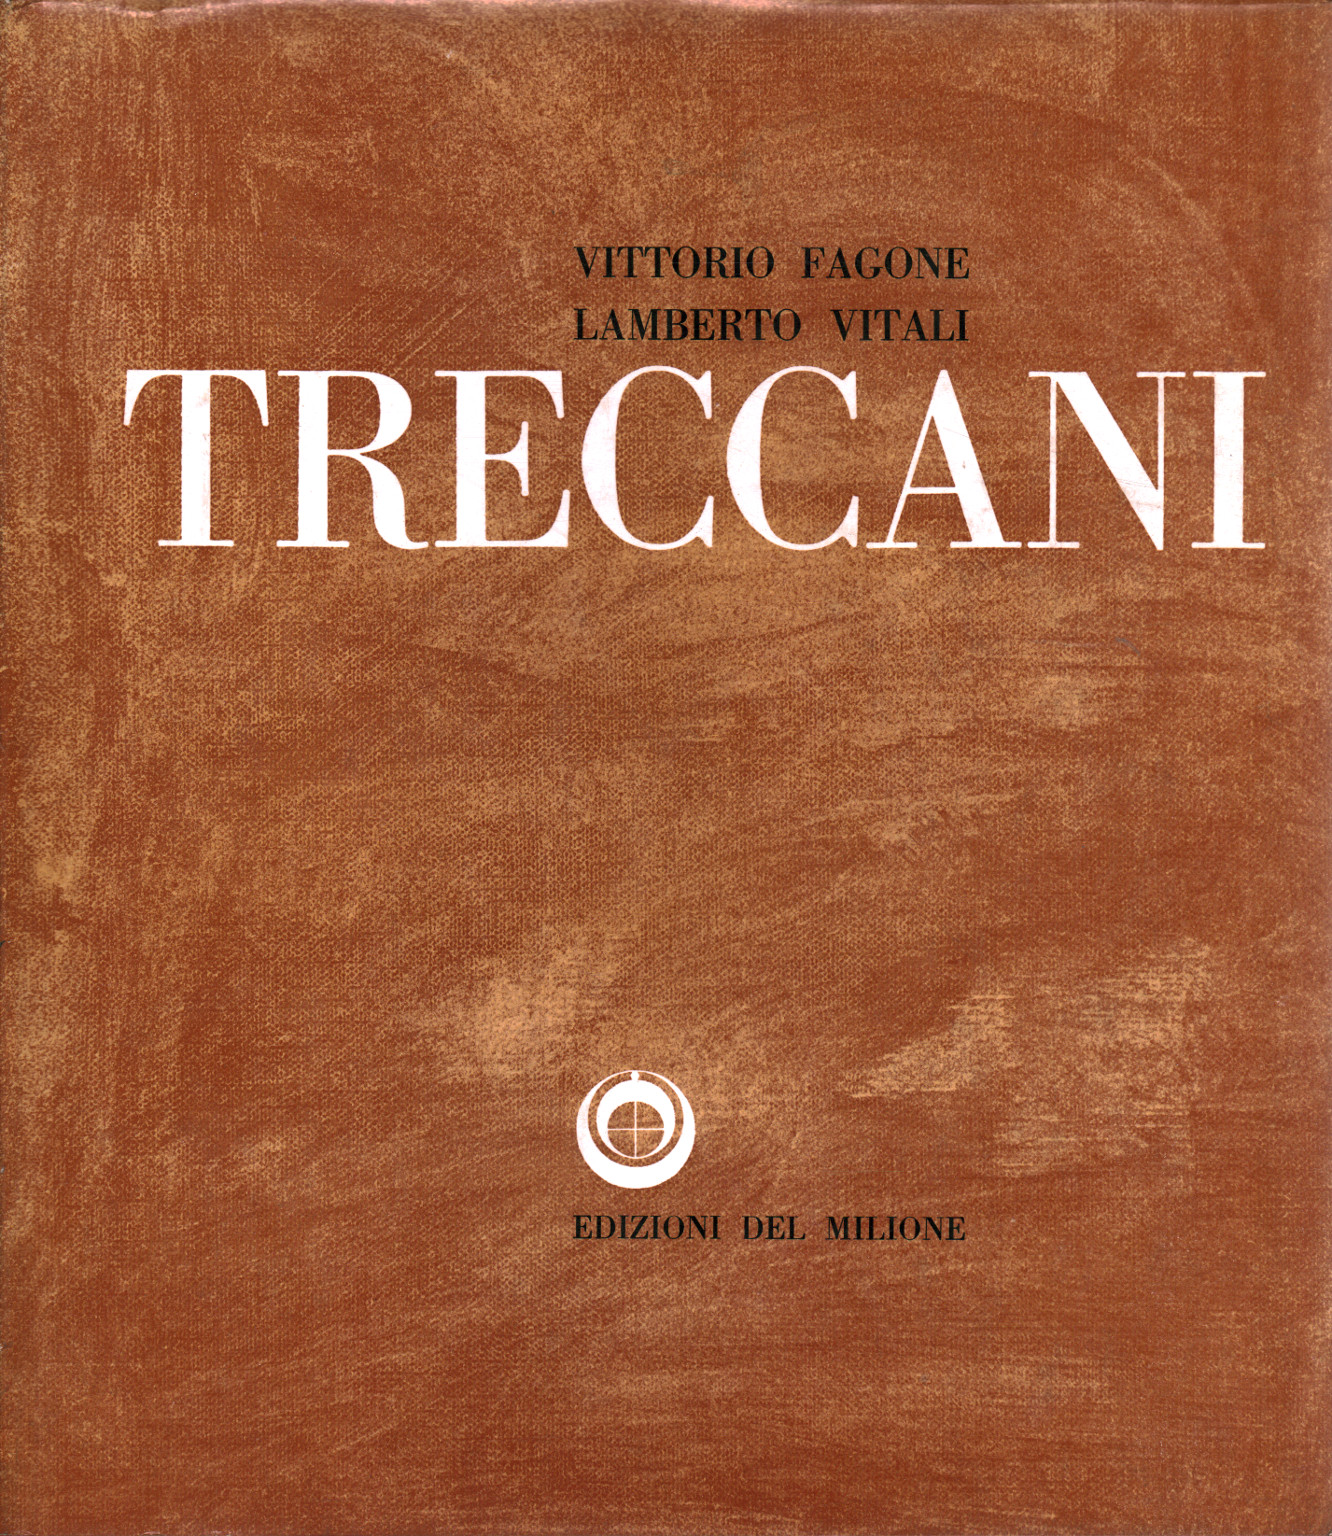 Ernesto Treccani, s.a.